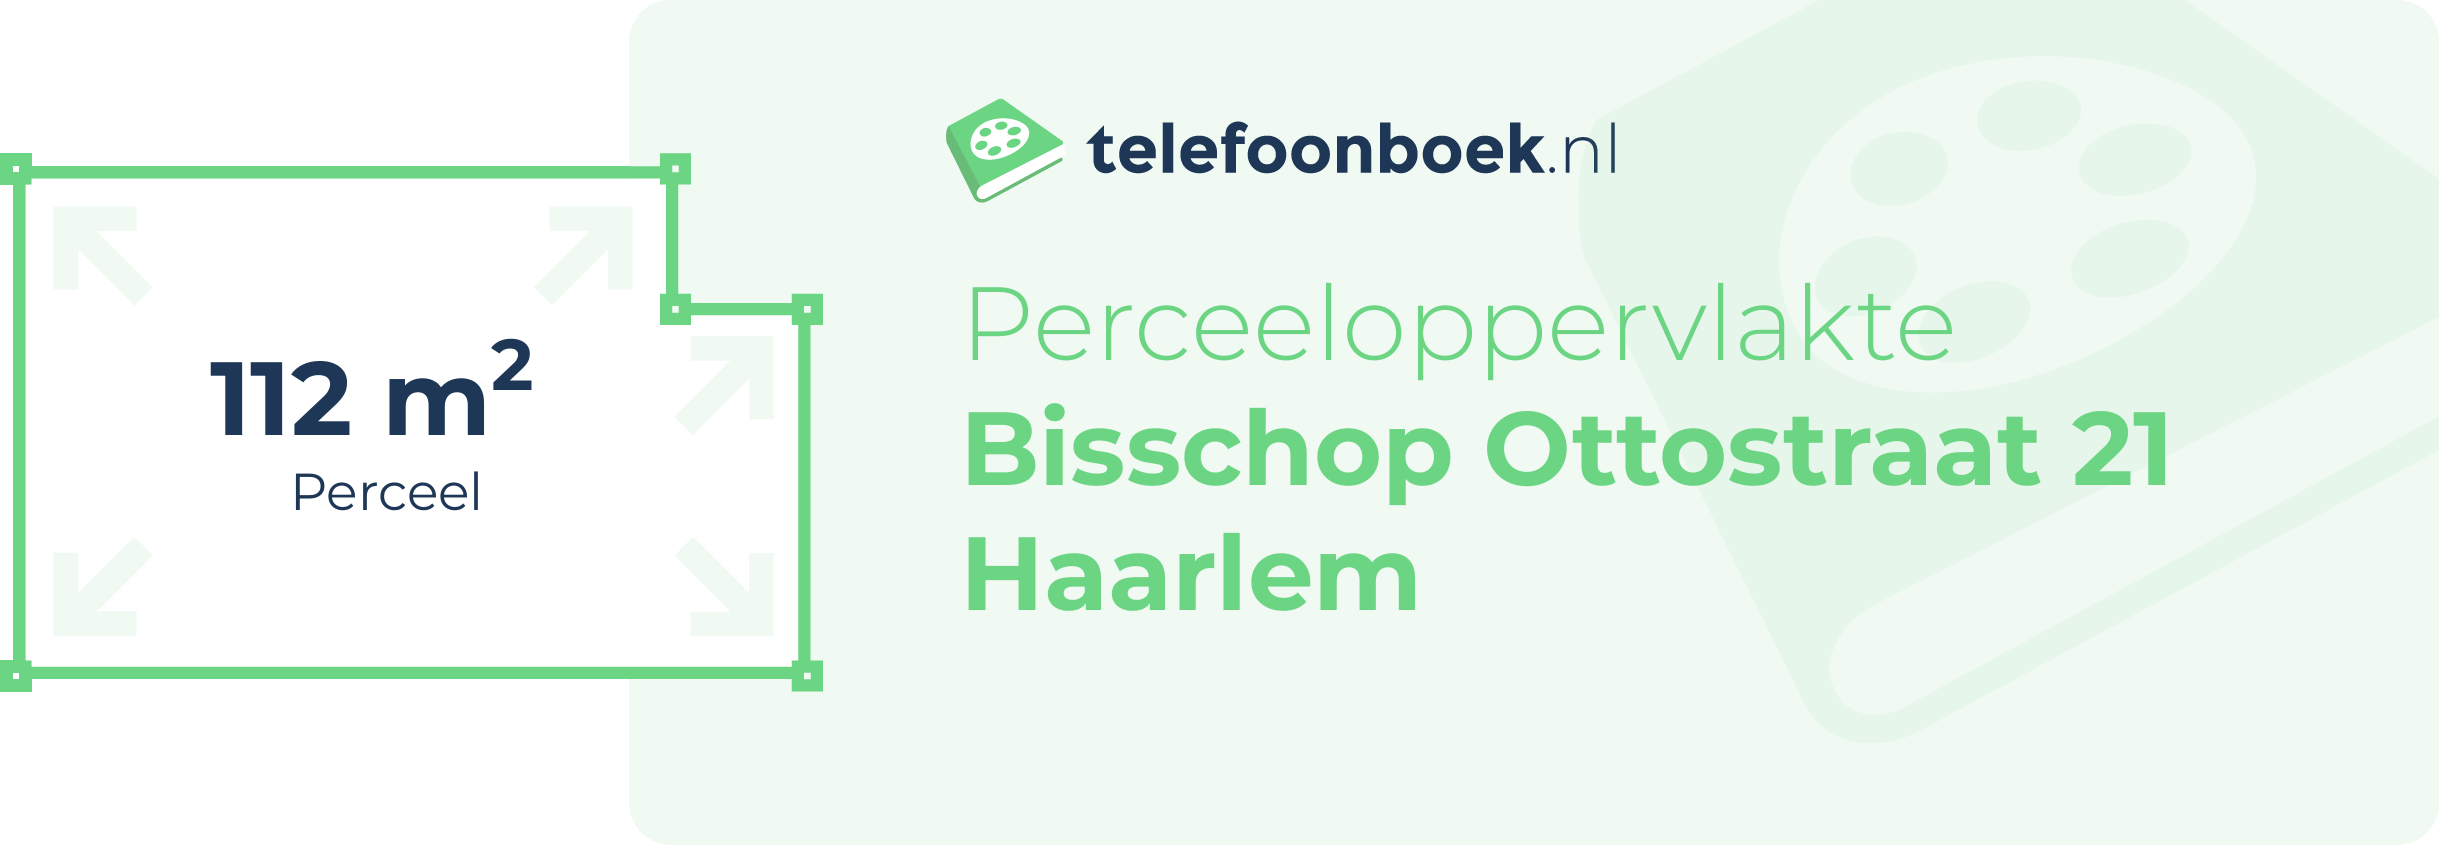 Perceeloppervlakte Bisschop Ottostraat 21 Haarlem